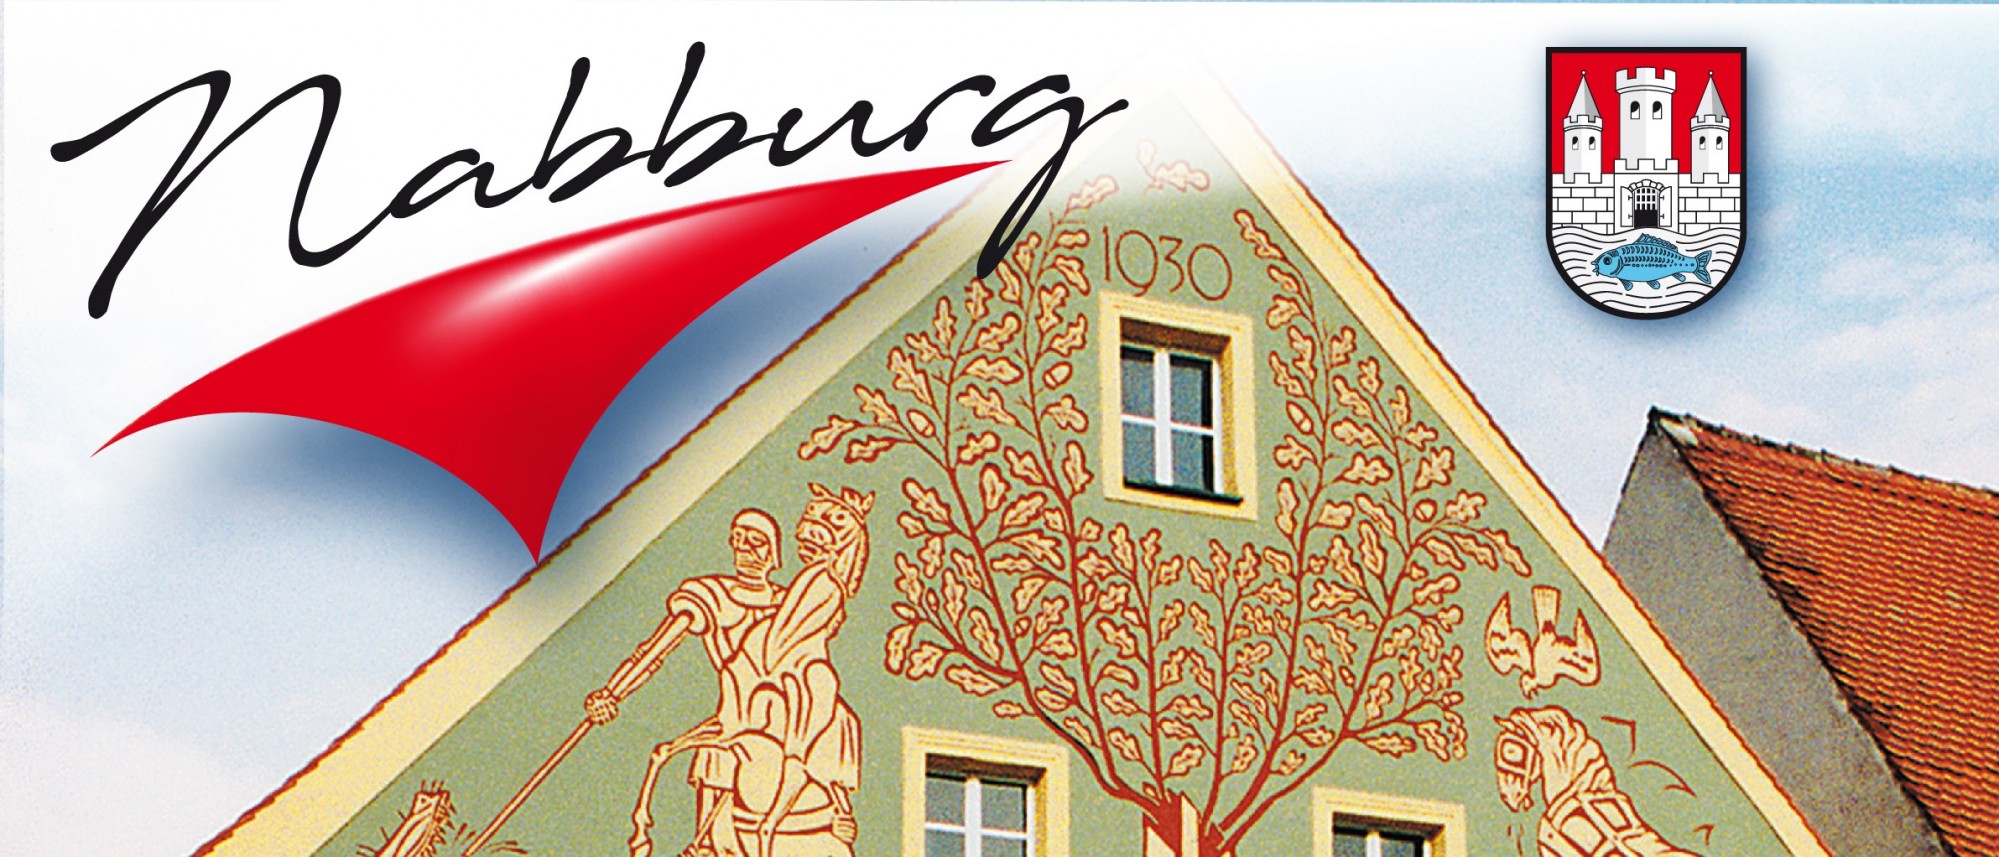 Das Foto ist Teil einer Slideshow. Es zeigt die Fassade des Schmidt-Hauses mit den Kratzputz-Malereien von Karl Schmidt. Eichenzweige rahmen Jahreszahl 1930. Am oberen Bildrand Logo und Wappen Nabburgs.